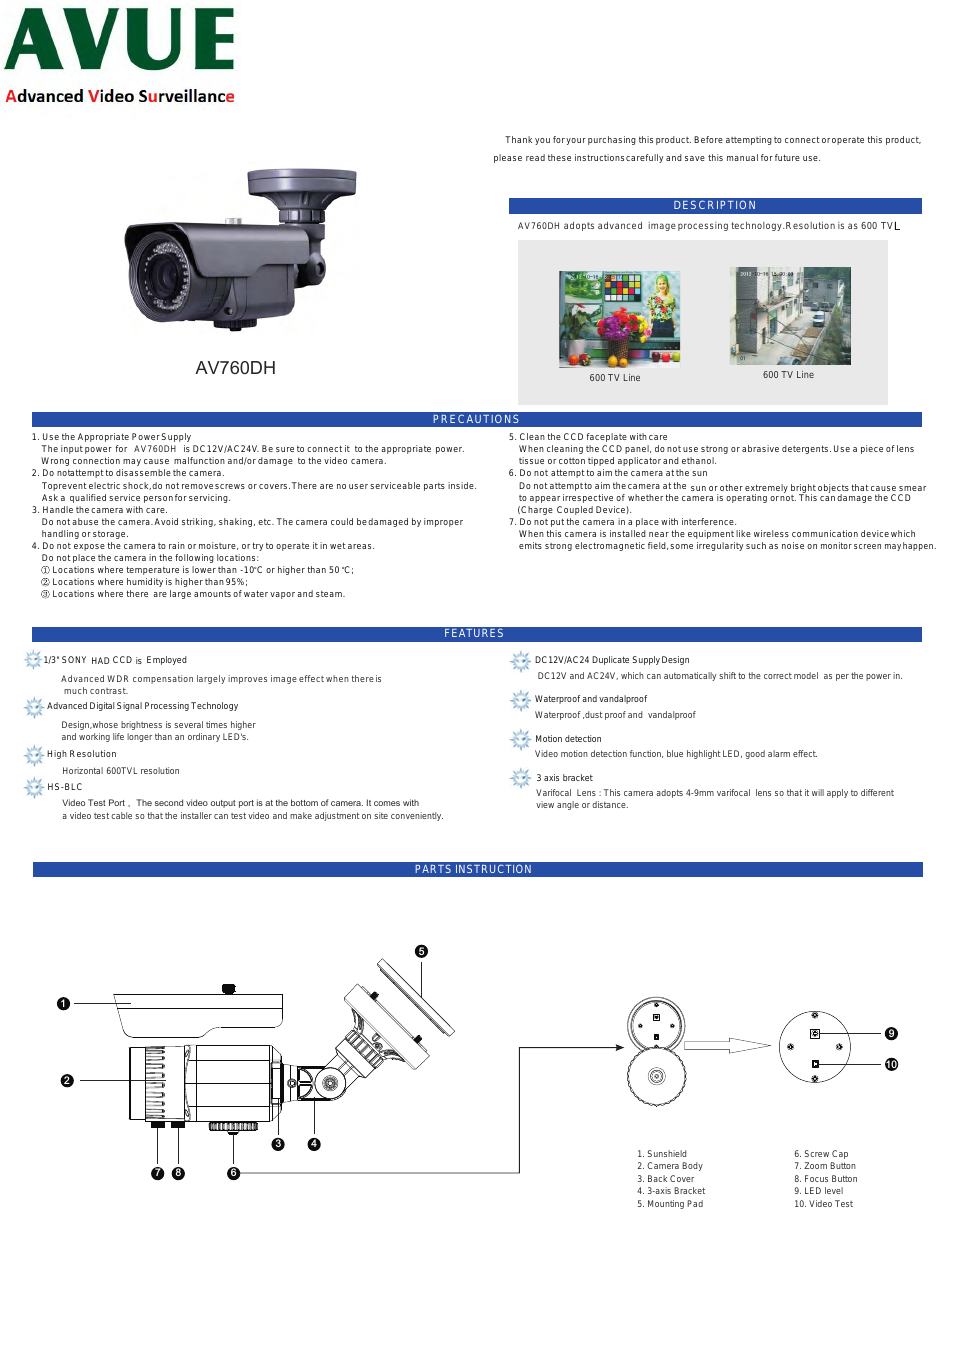 AV760DH – High Resolution Weather Proof IR Bullet Camera